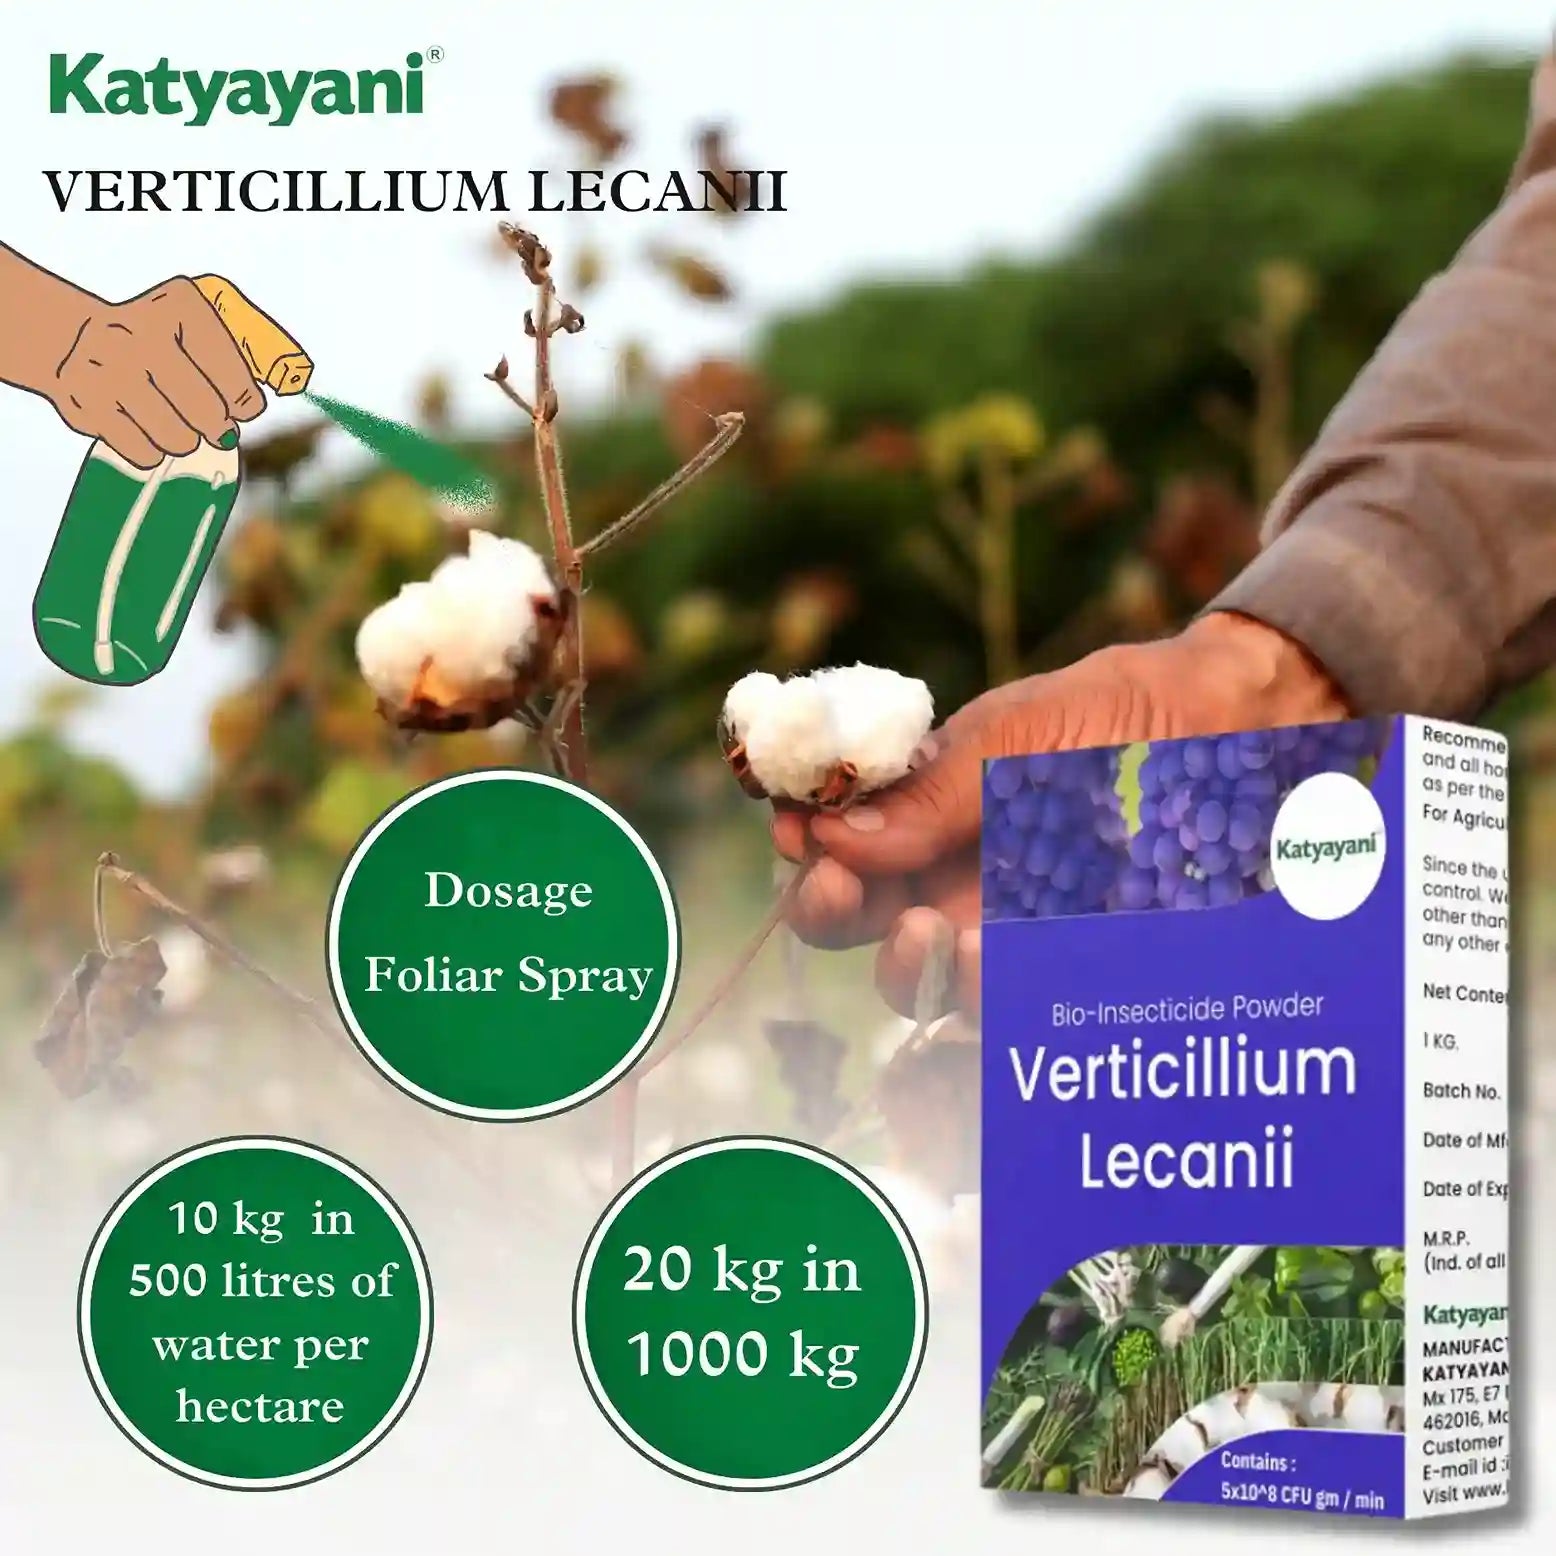 Katyayani Verticillium Lecanii Bio Insecticide Powder dosage